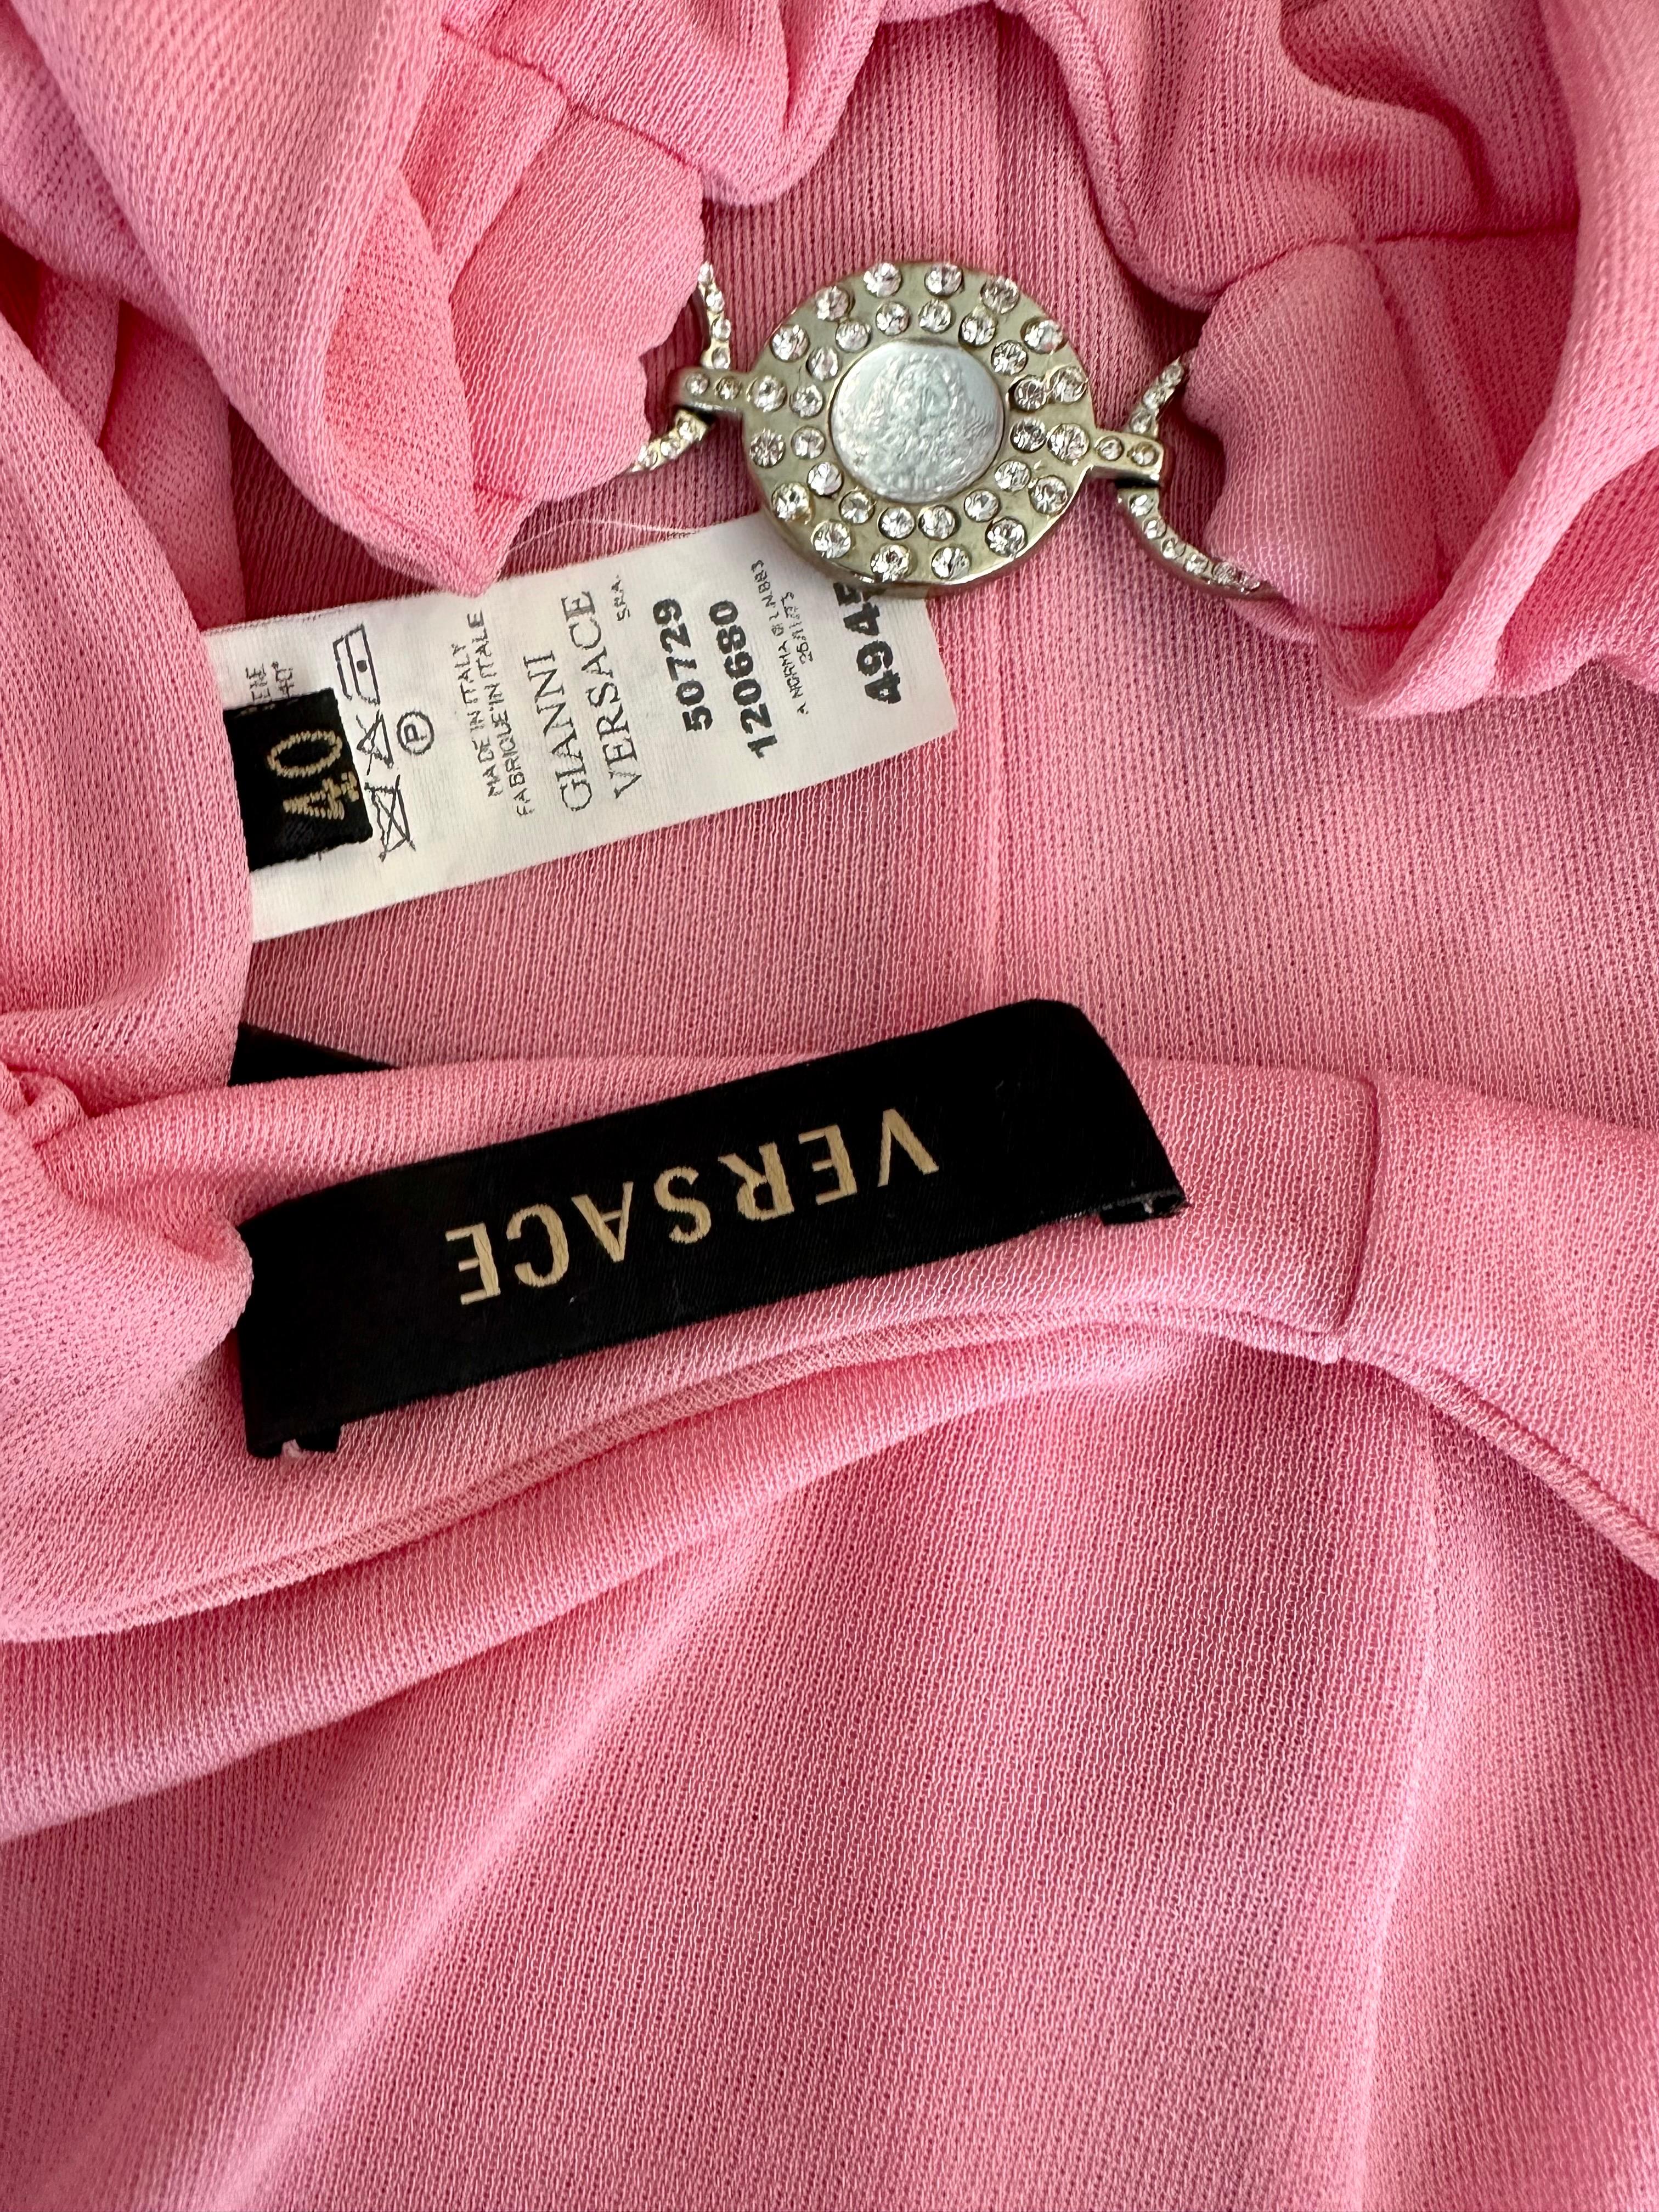 Versace S/S 2007 Crystal Logo Plunging Neckline Backless Halter Pink Dress For Sale 5